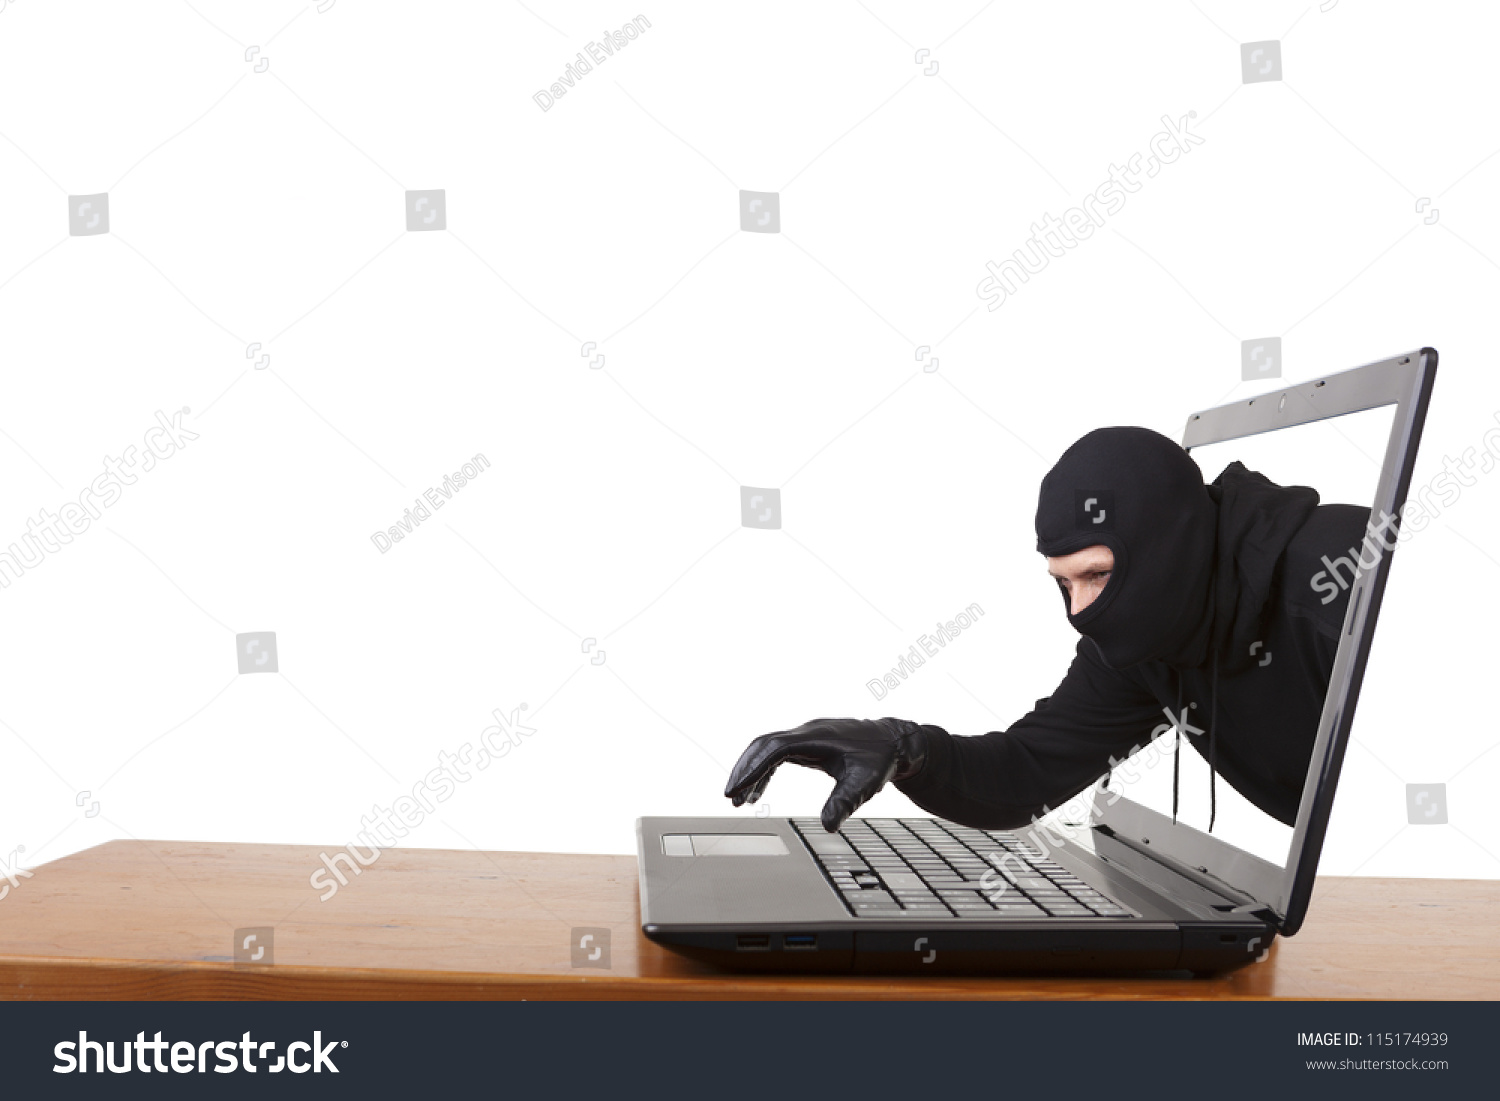 网络盗窃,一个头戴绒线帽子的人通过笔记本电